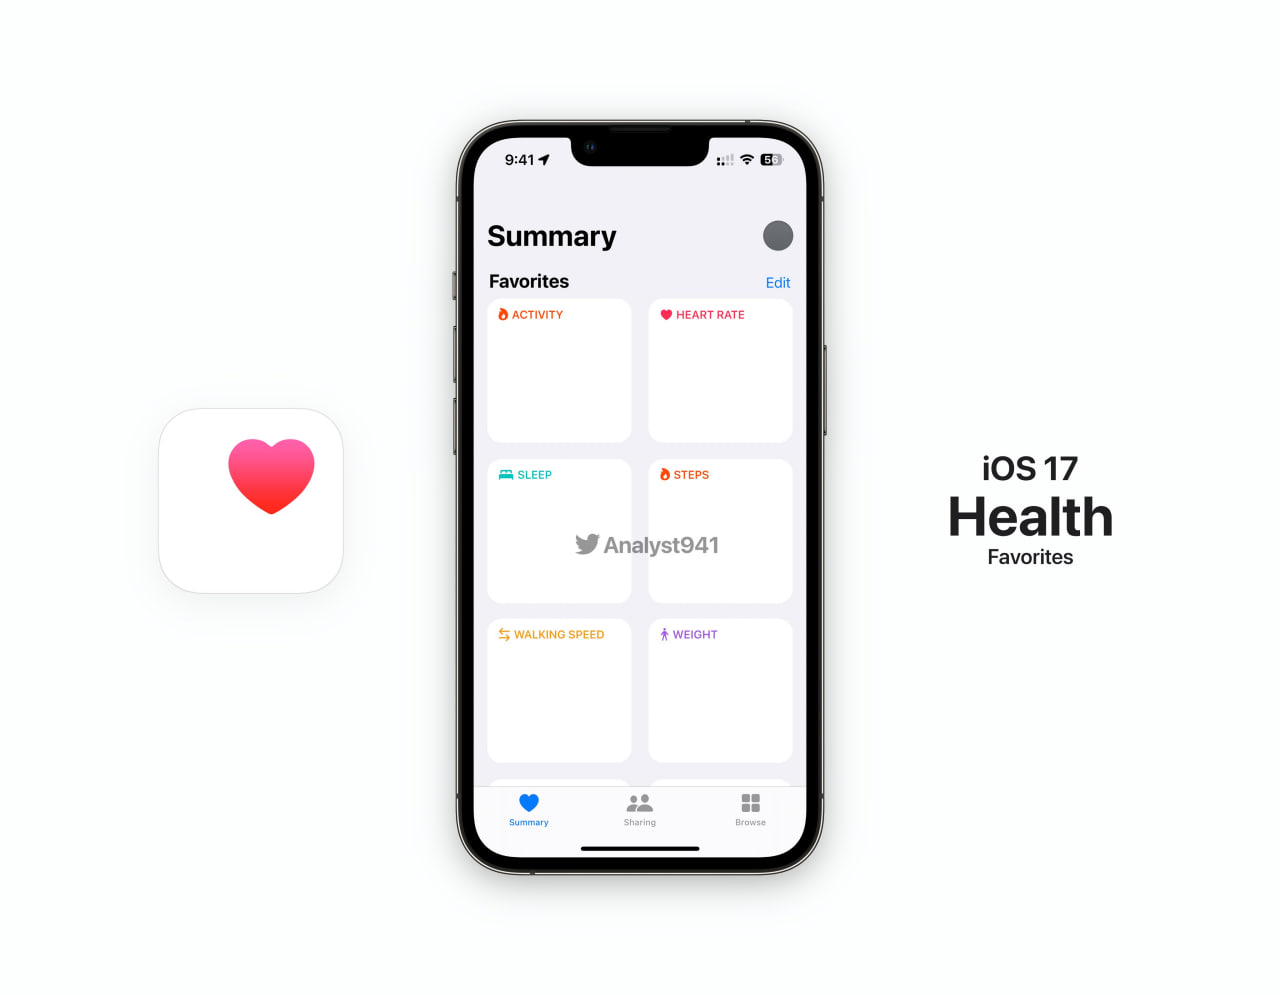 Apple iOS 17 Wallet Health app